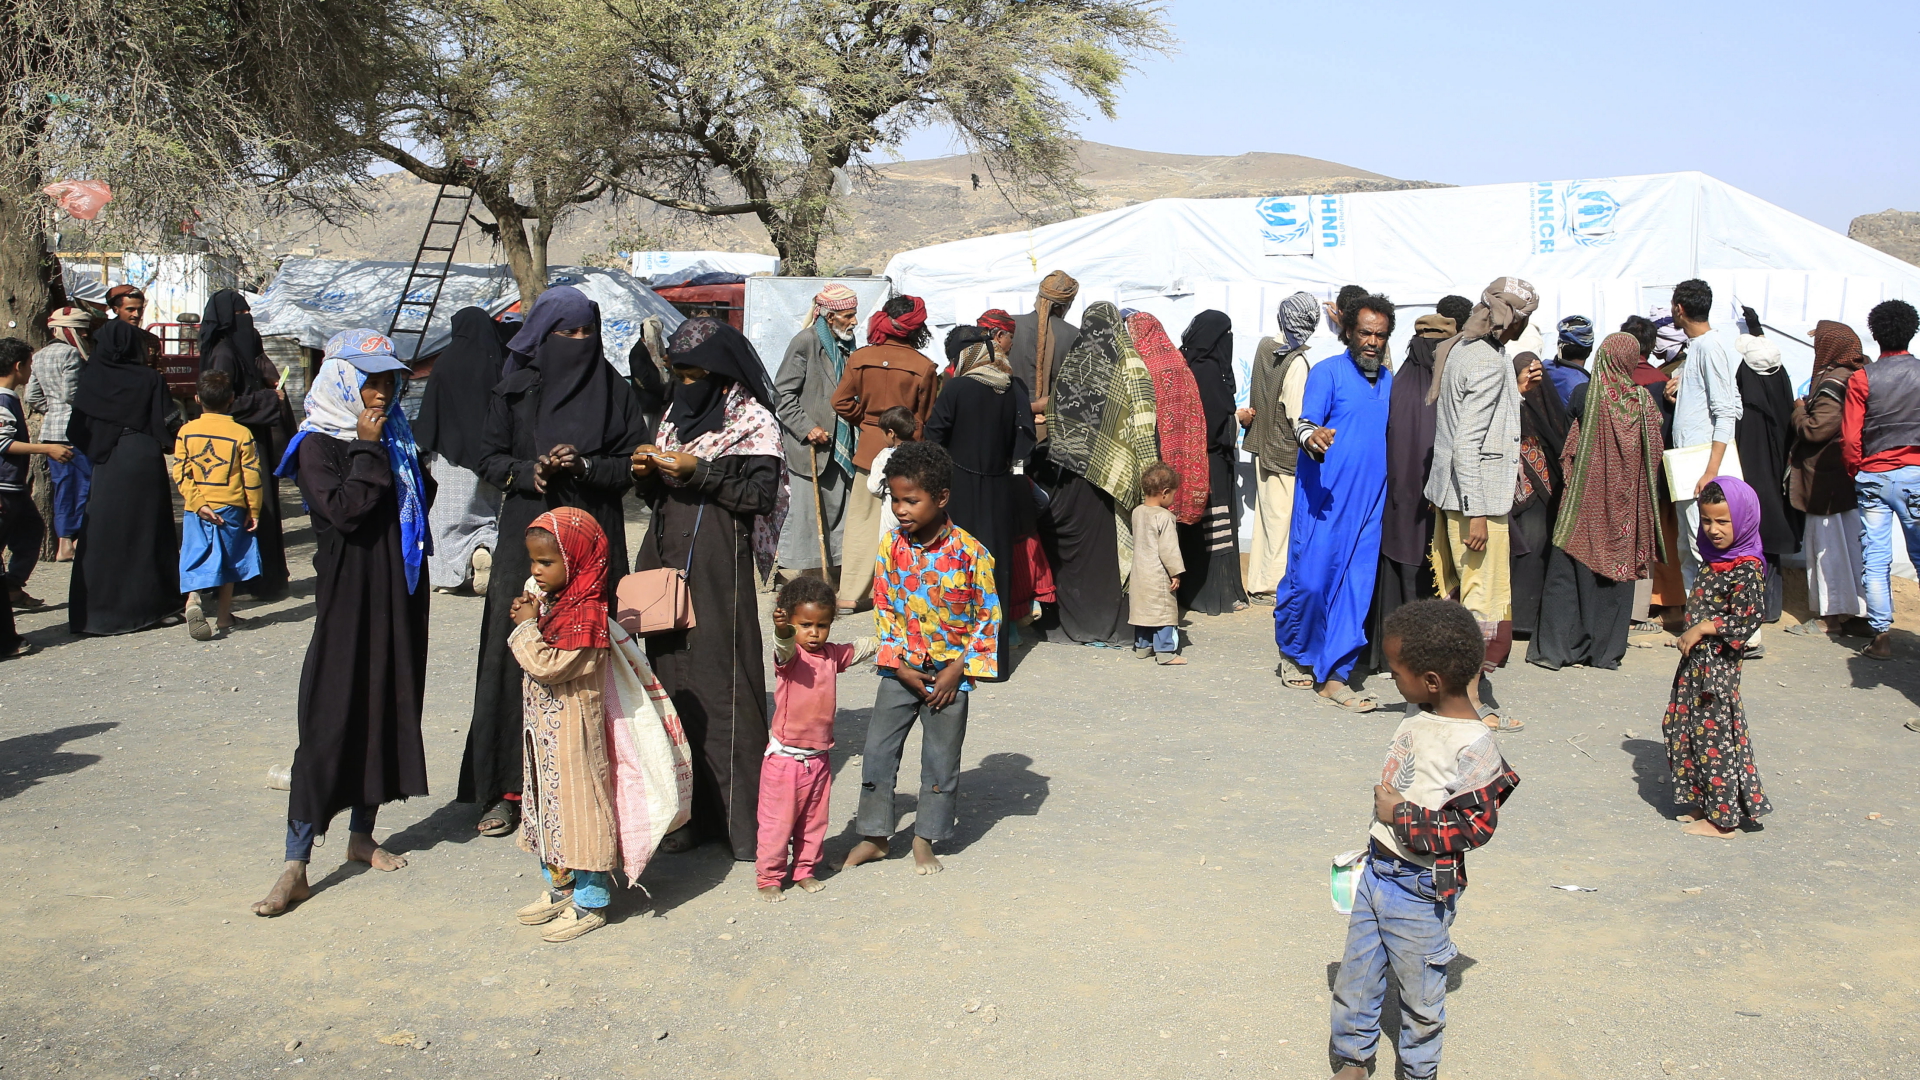 Jemenitische Flüchtlinge stehen vor einem Zelt in einem Camp nahe Sanaa. | EPA